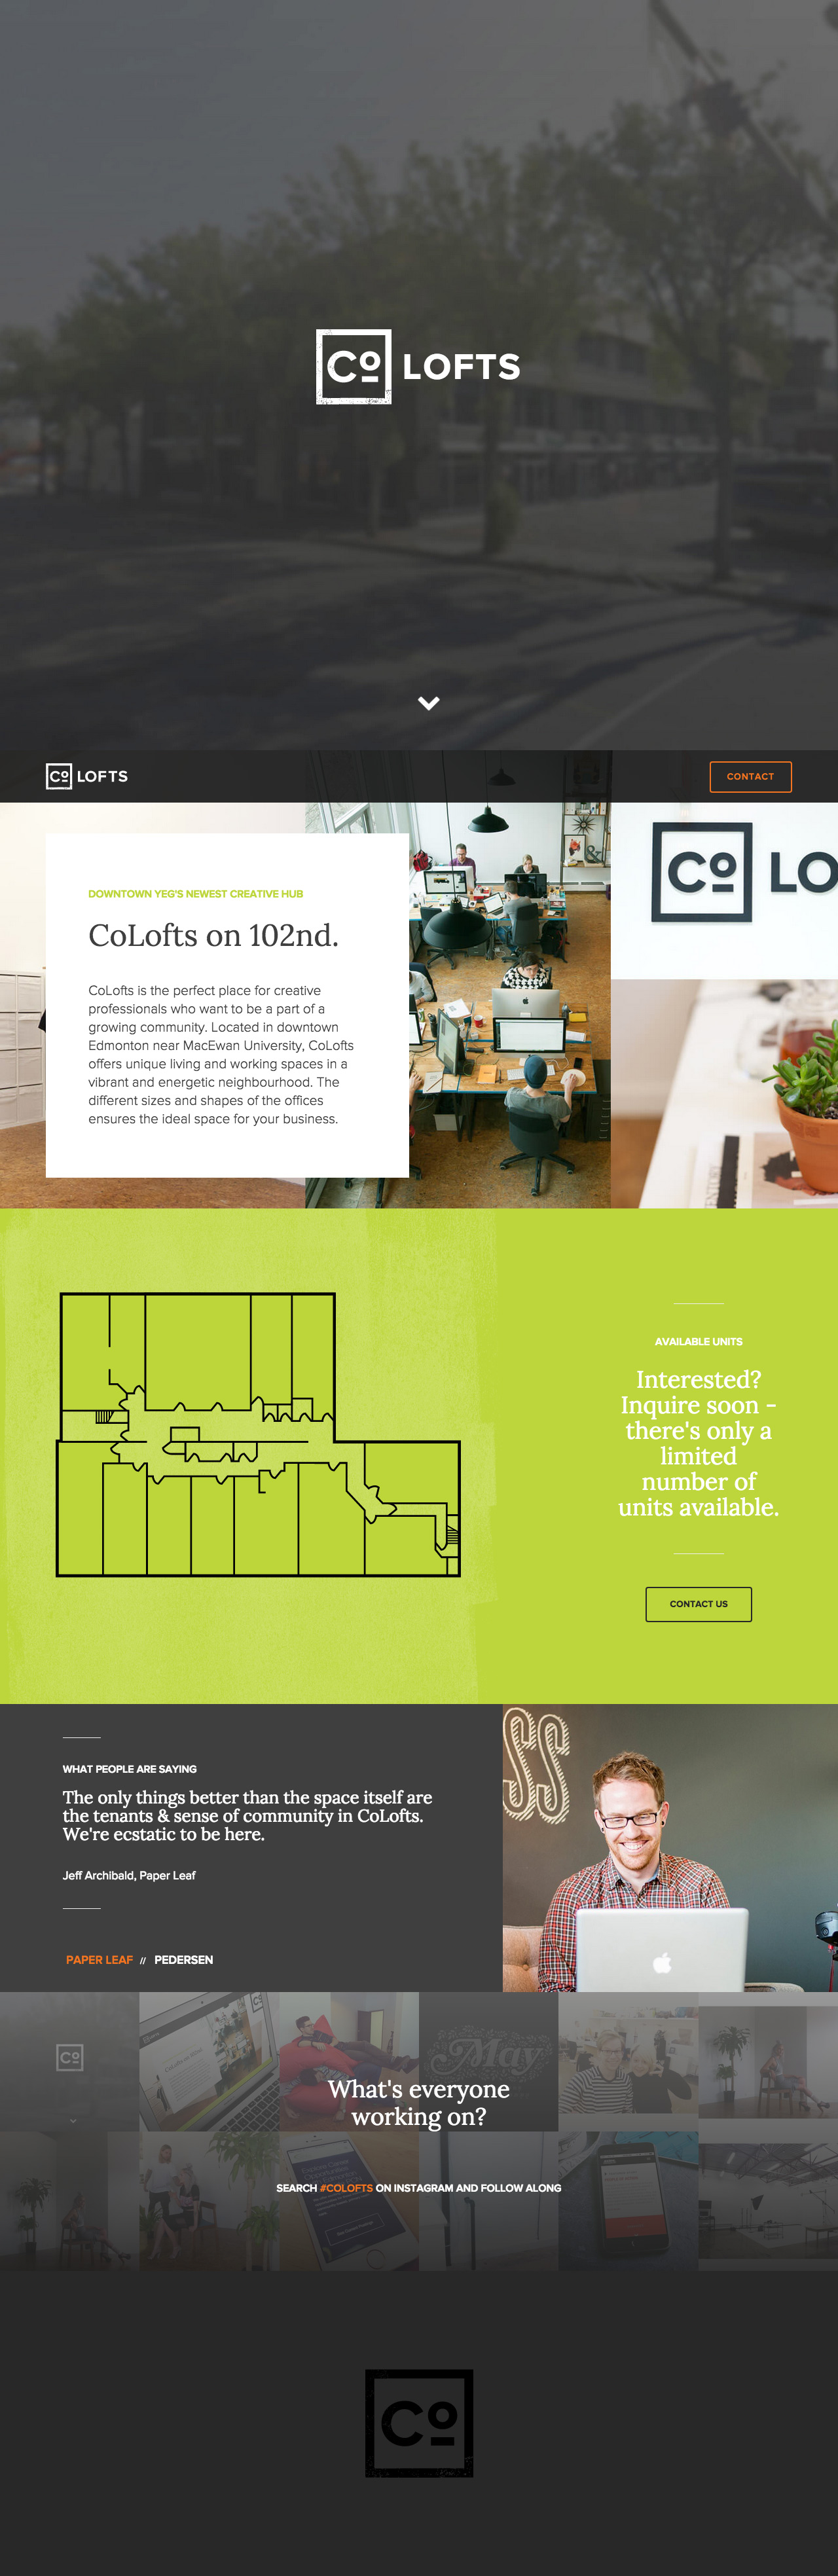 CoLofts Website Screenshot